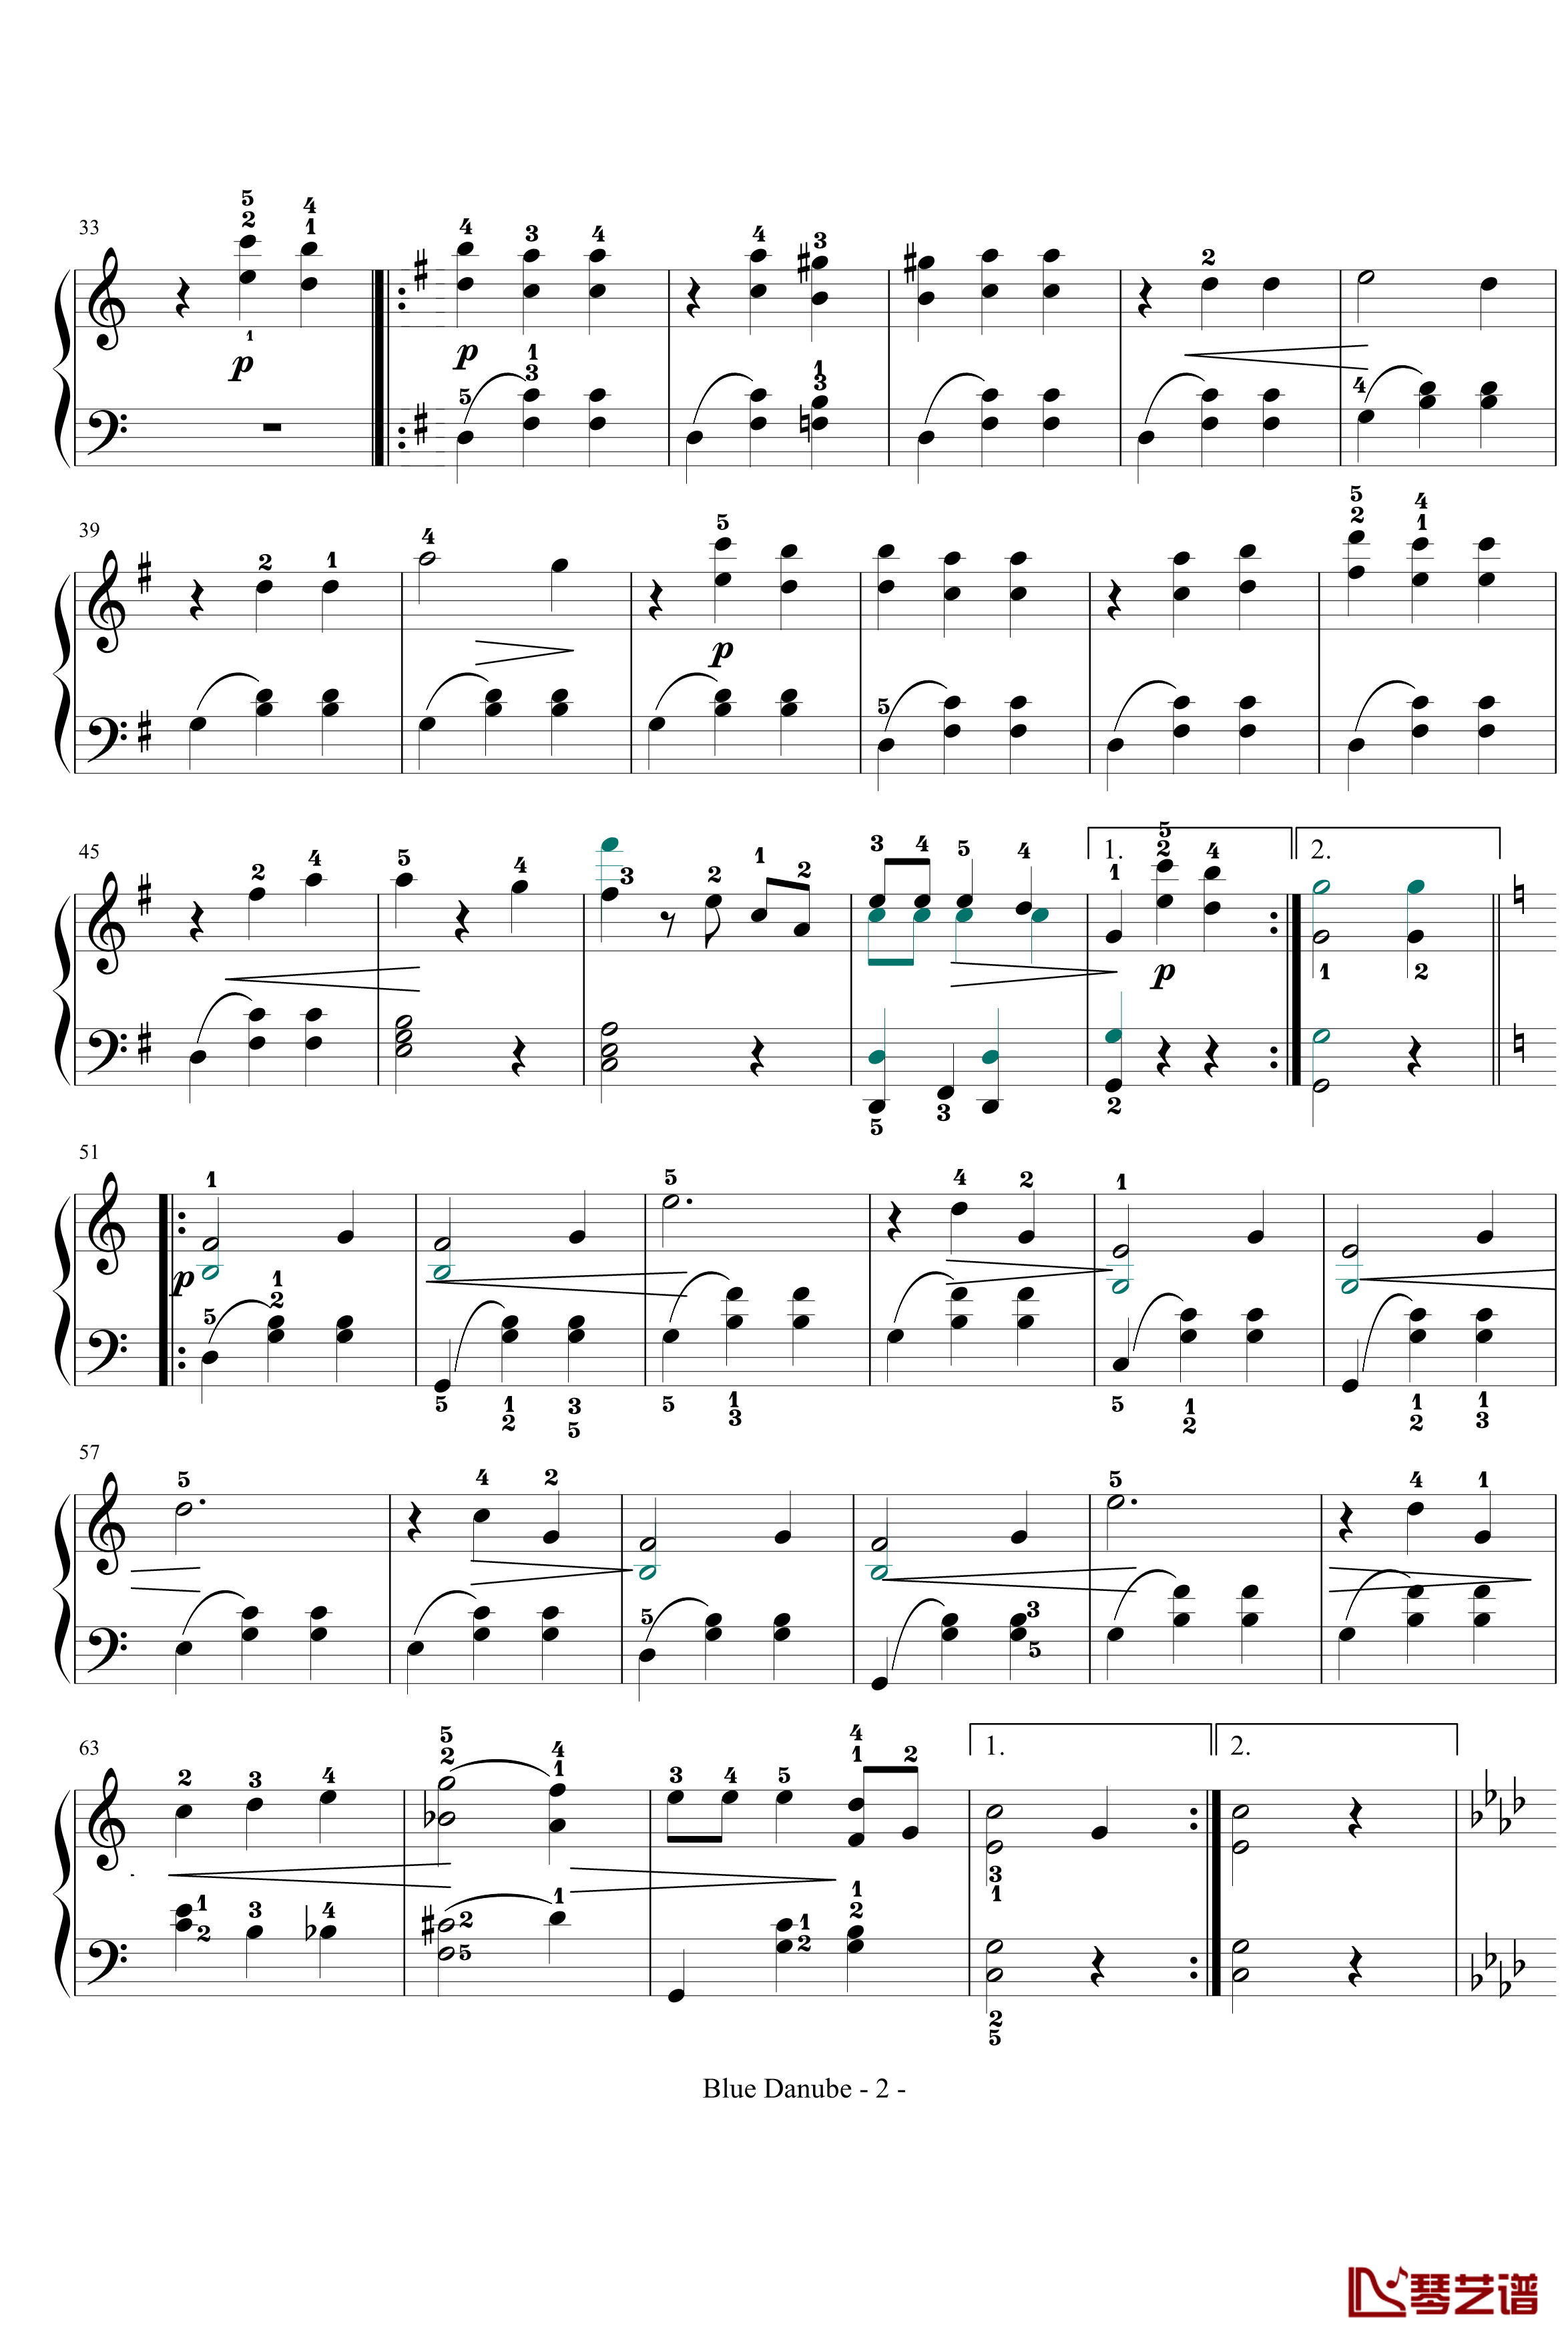 蓝色多瑙河钢琴谱-完整-带指法简化-约翰·斯特劳斯2